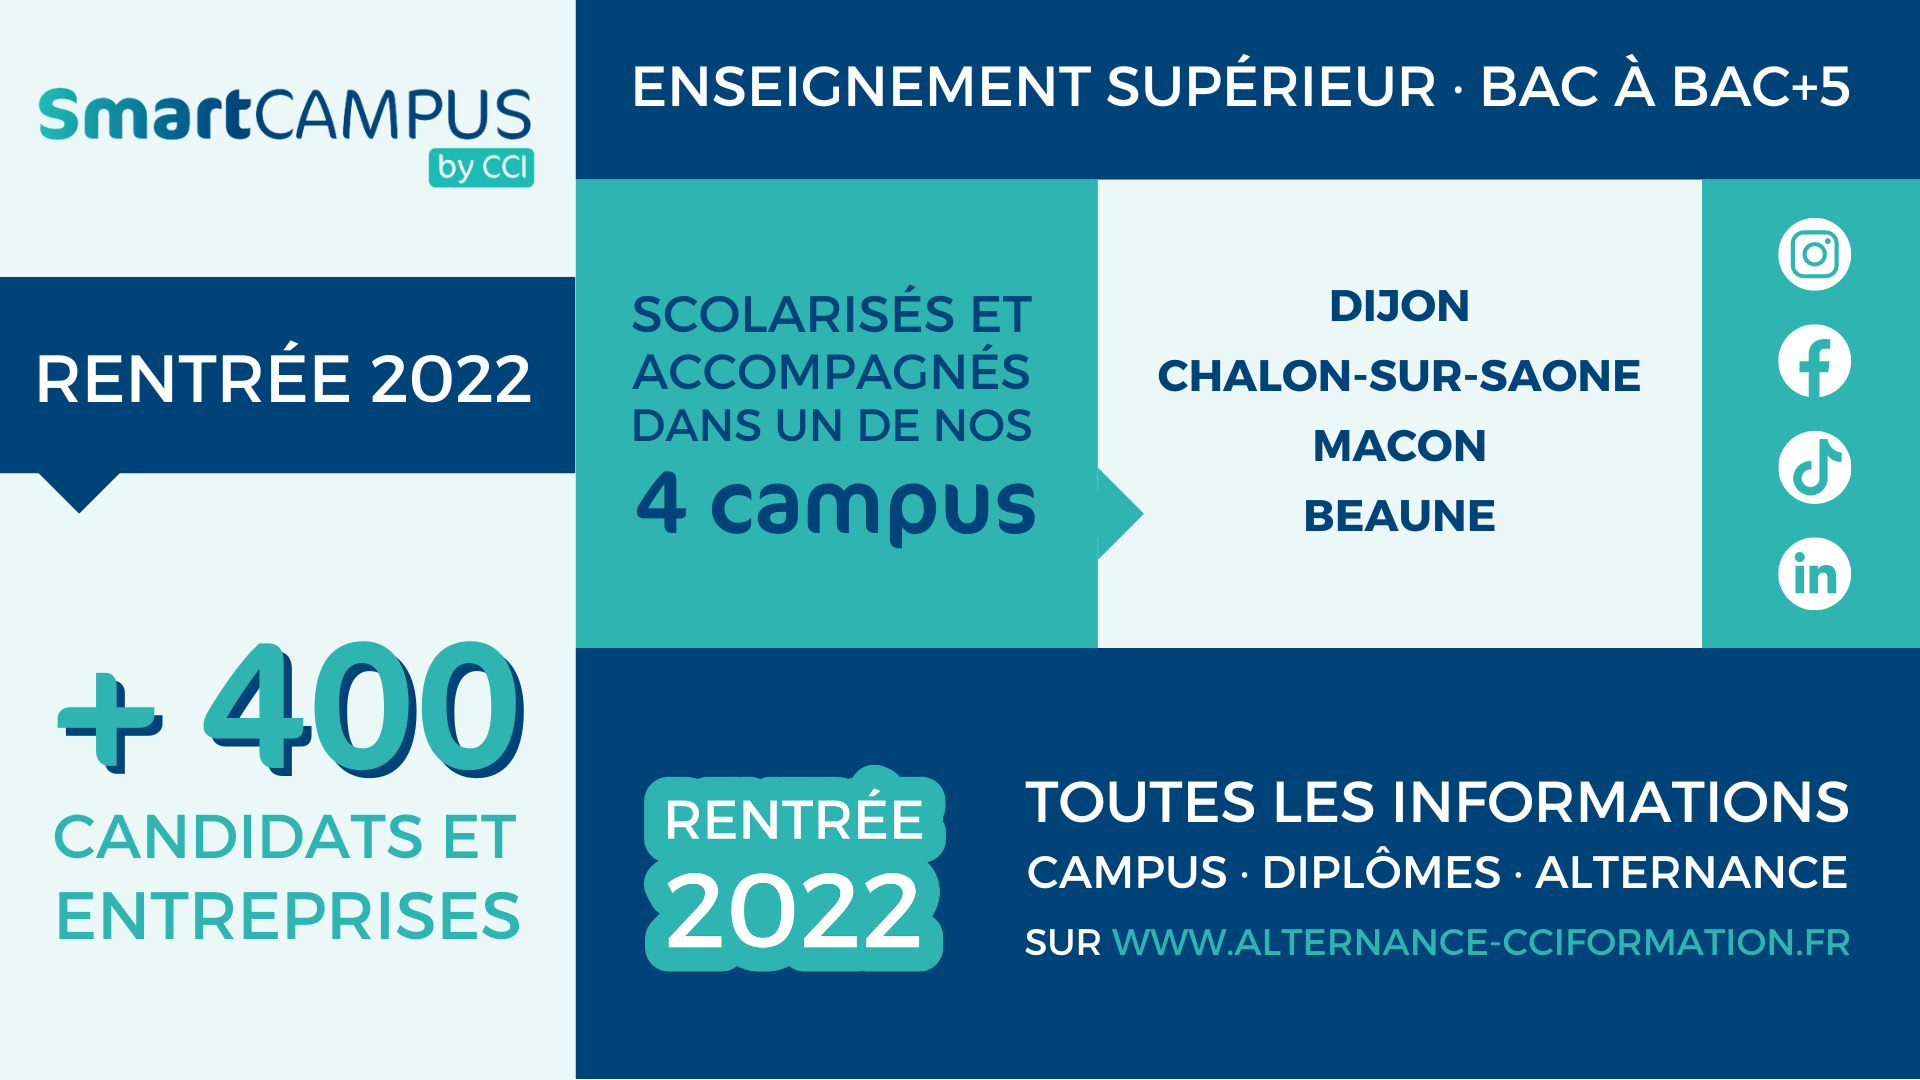 Infographie rentrée 2022 Smart Campus by CCI